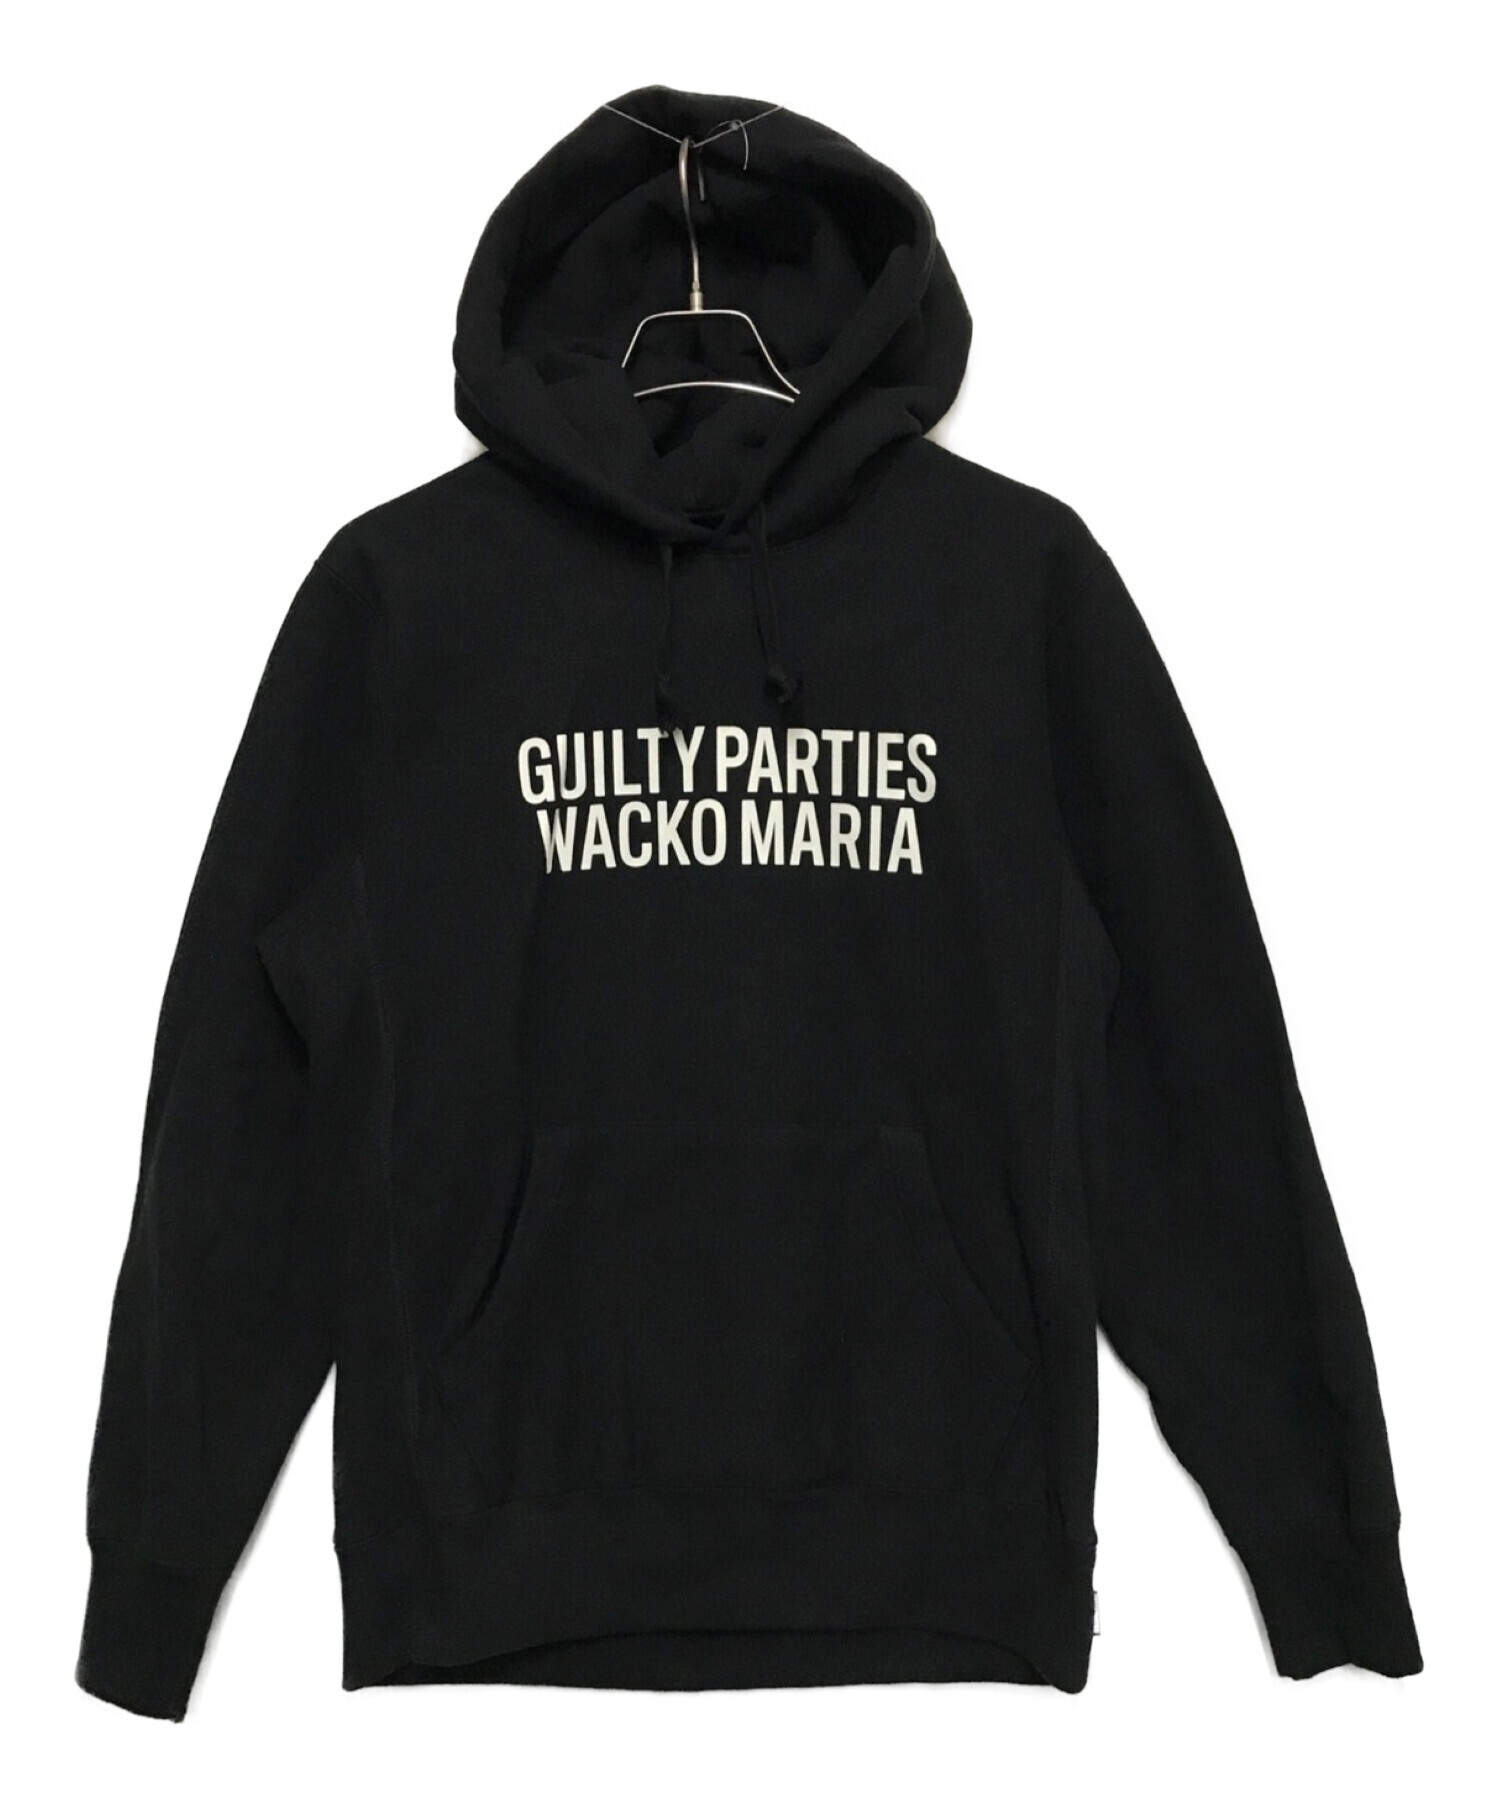 【新品未使用】WACKO MARIA Guilty Parties ロゴフーディ身幅約61cm